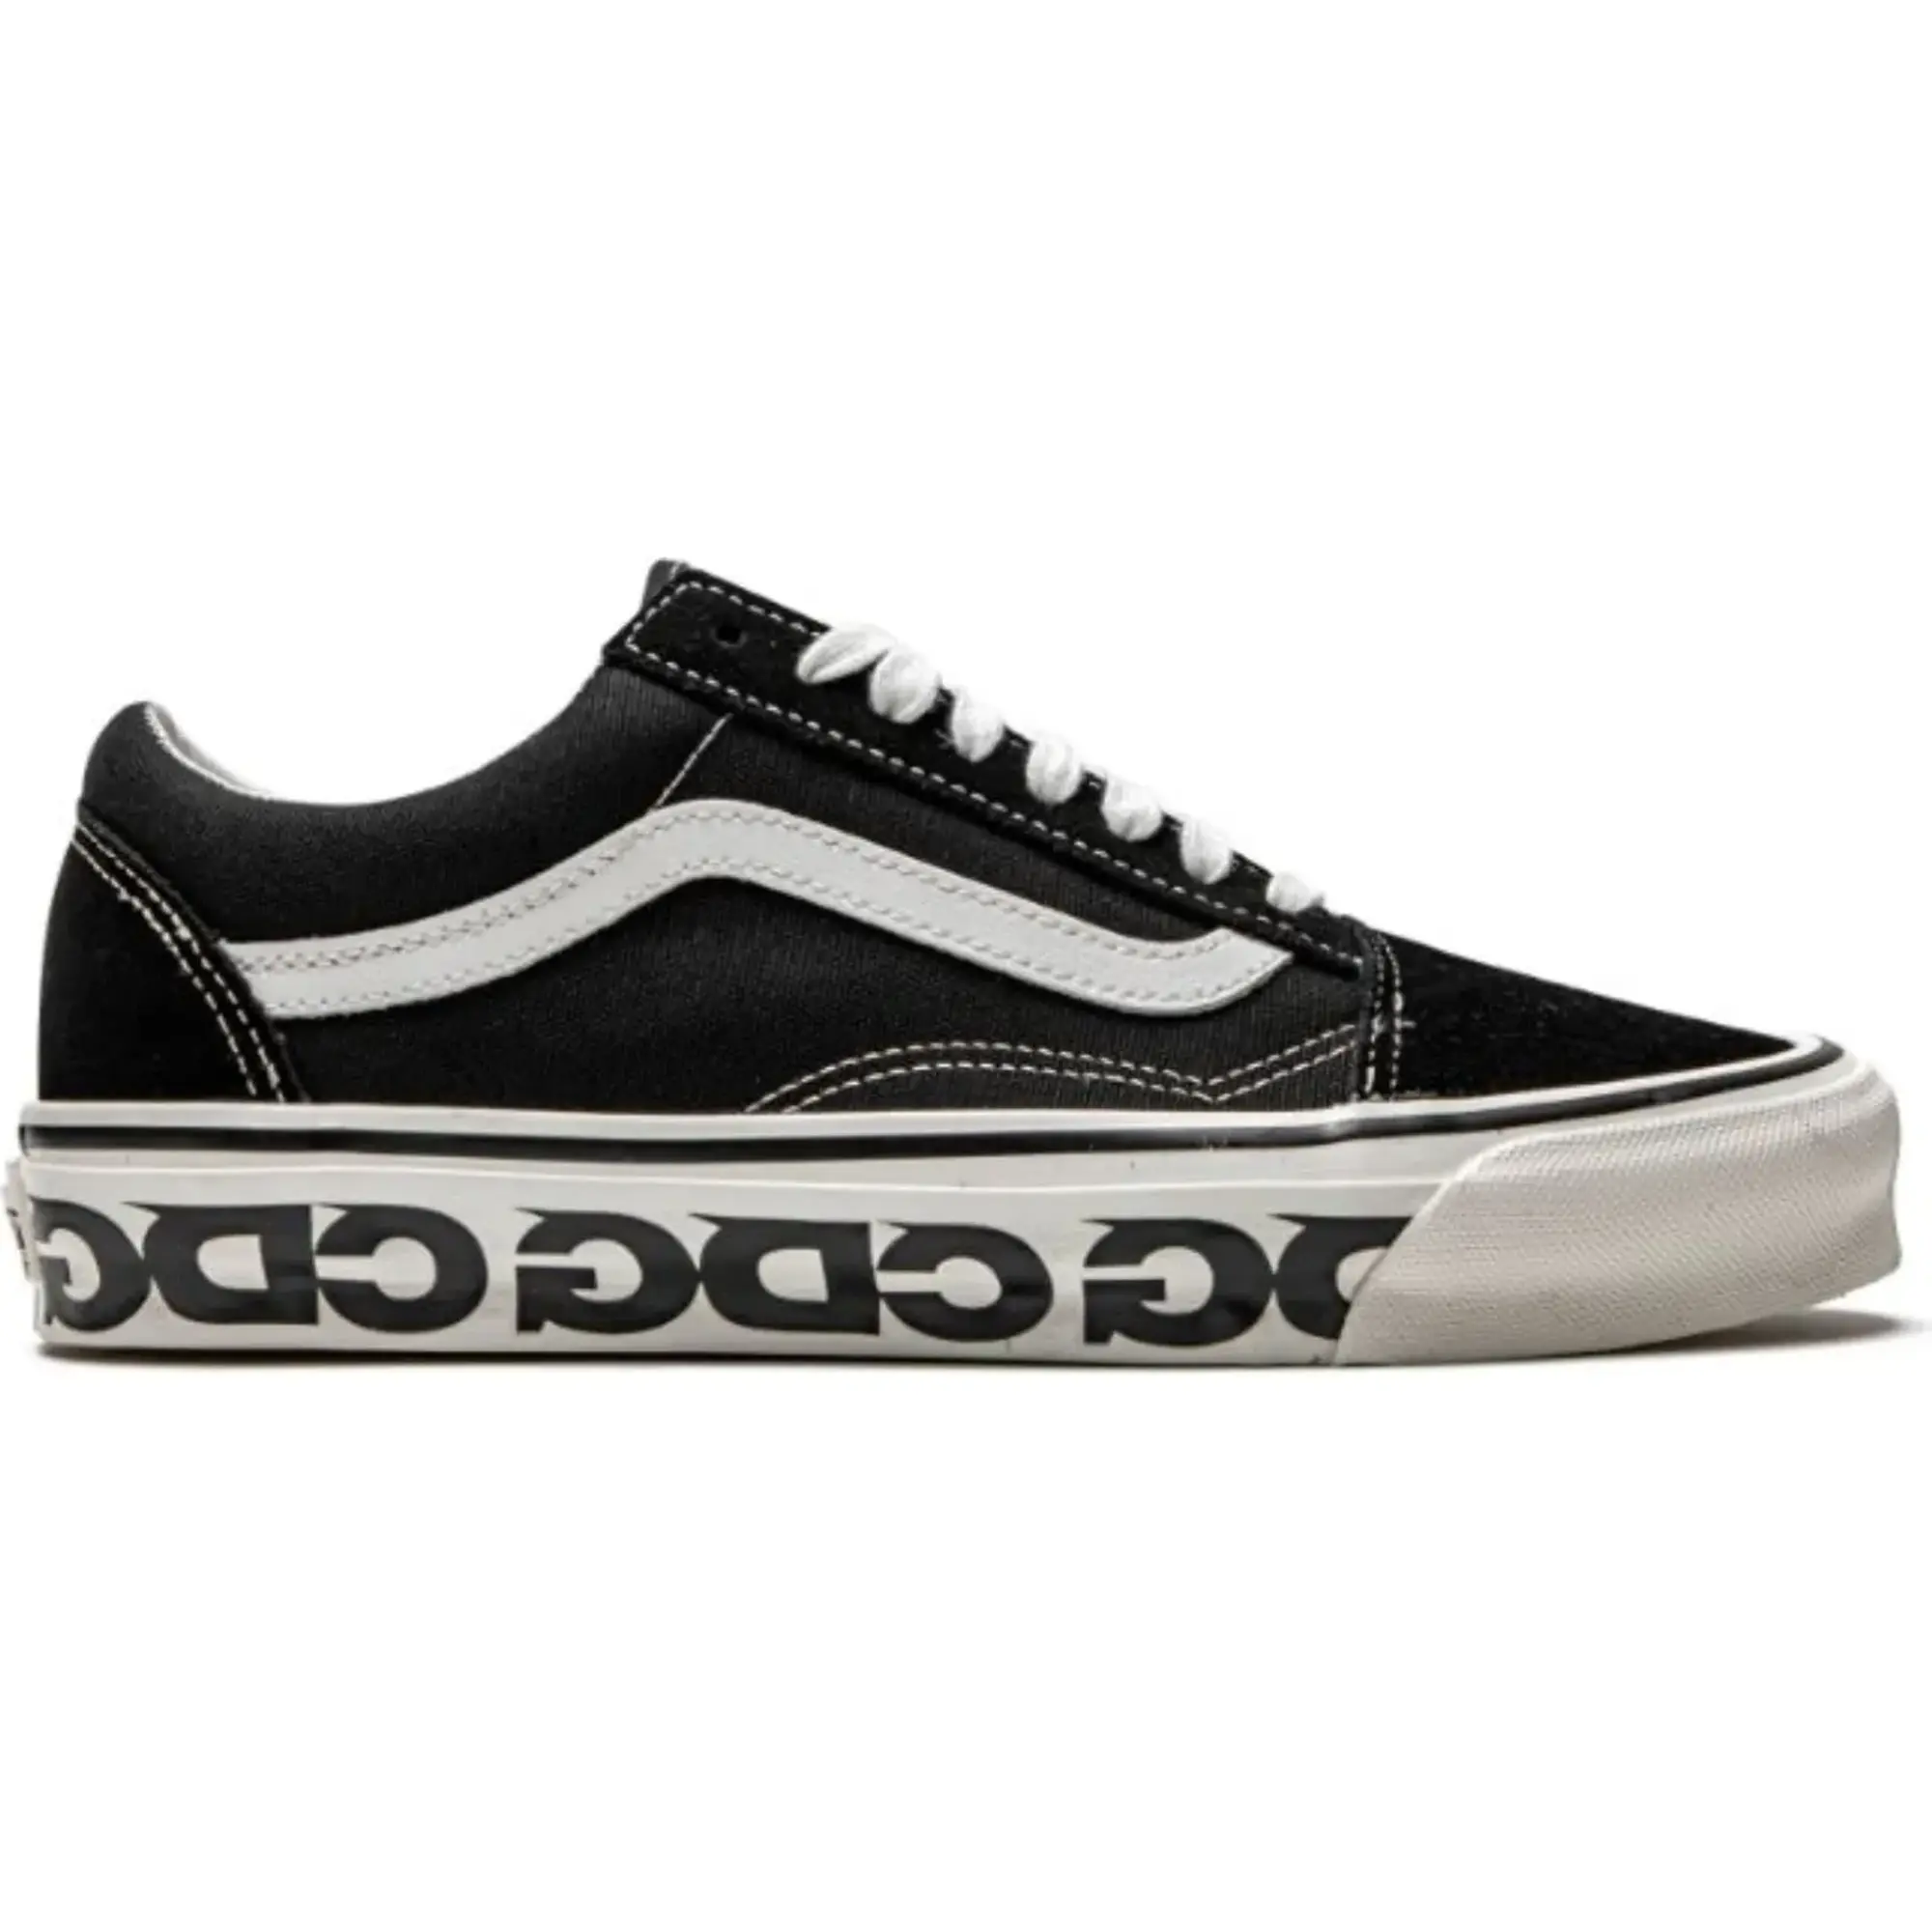 Vans OG Old Skool LX CDG - Sidewall Shoes